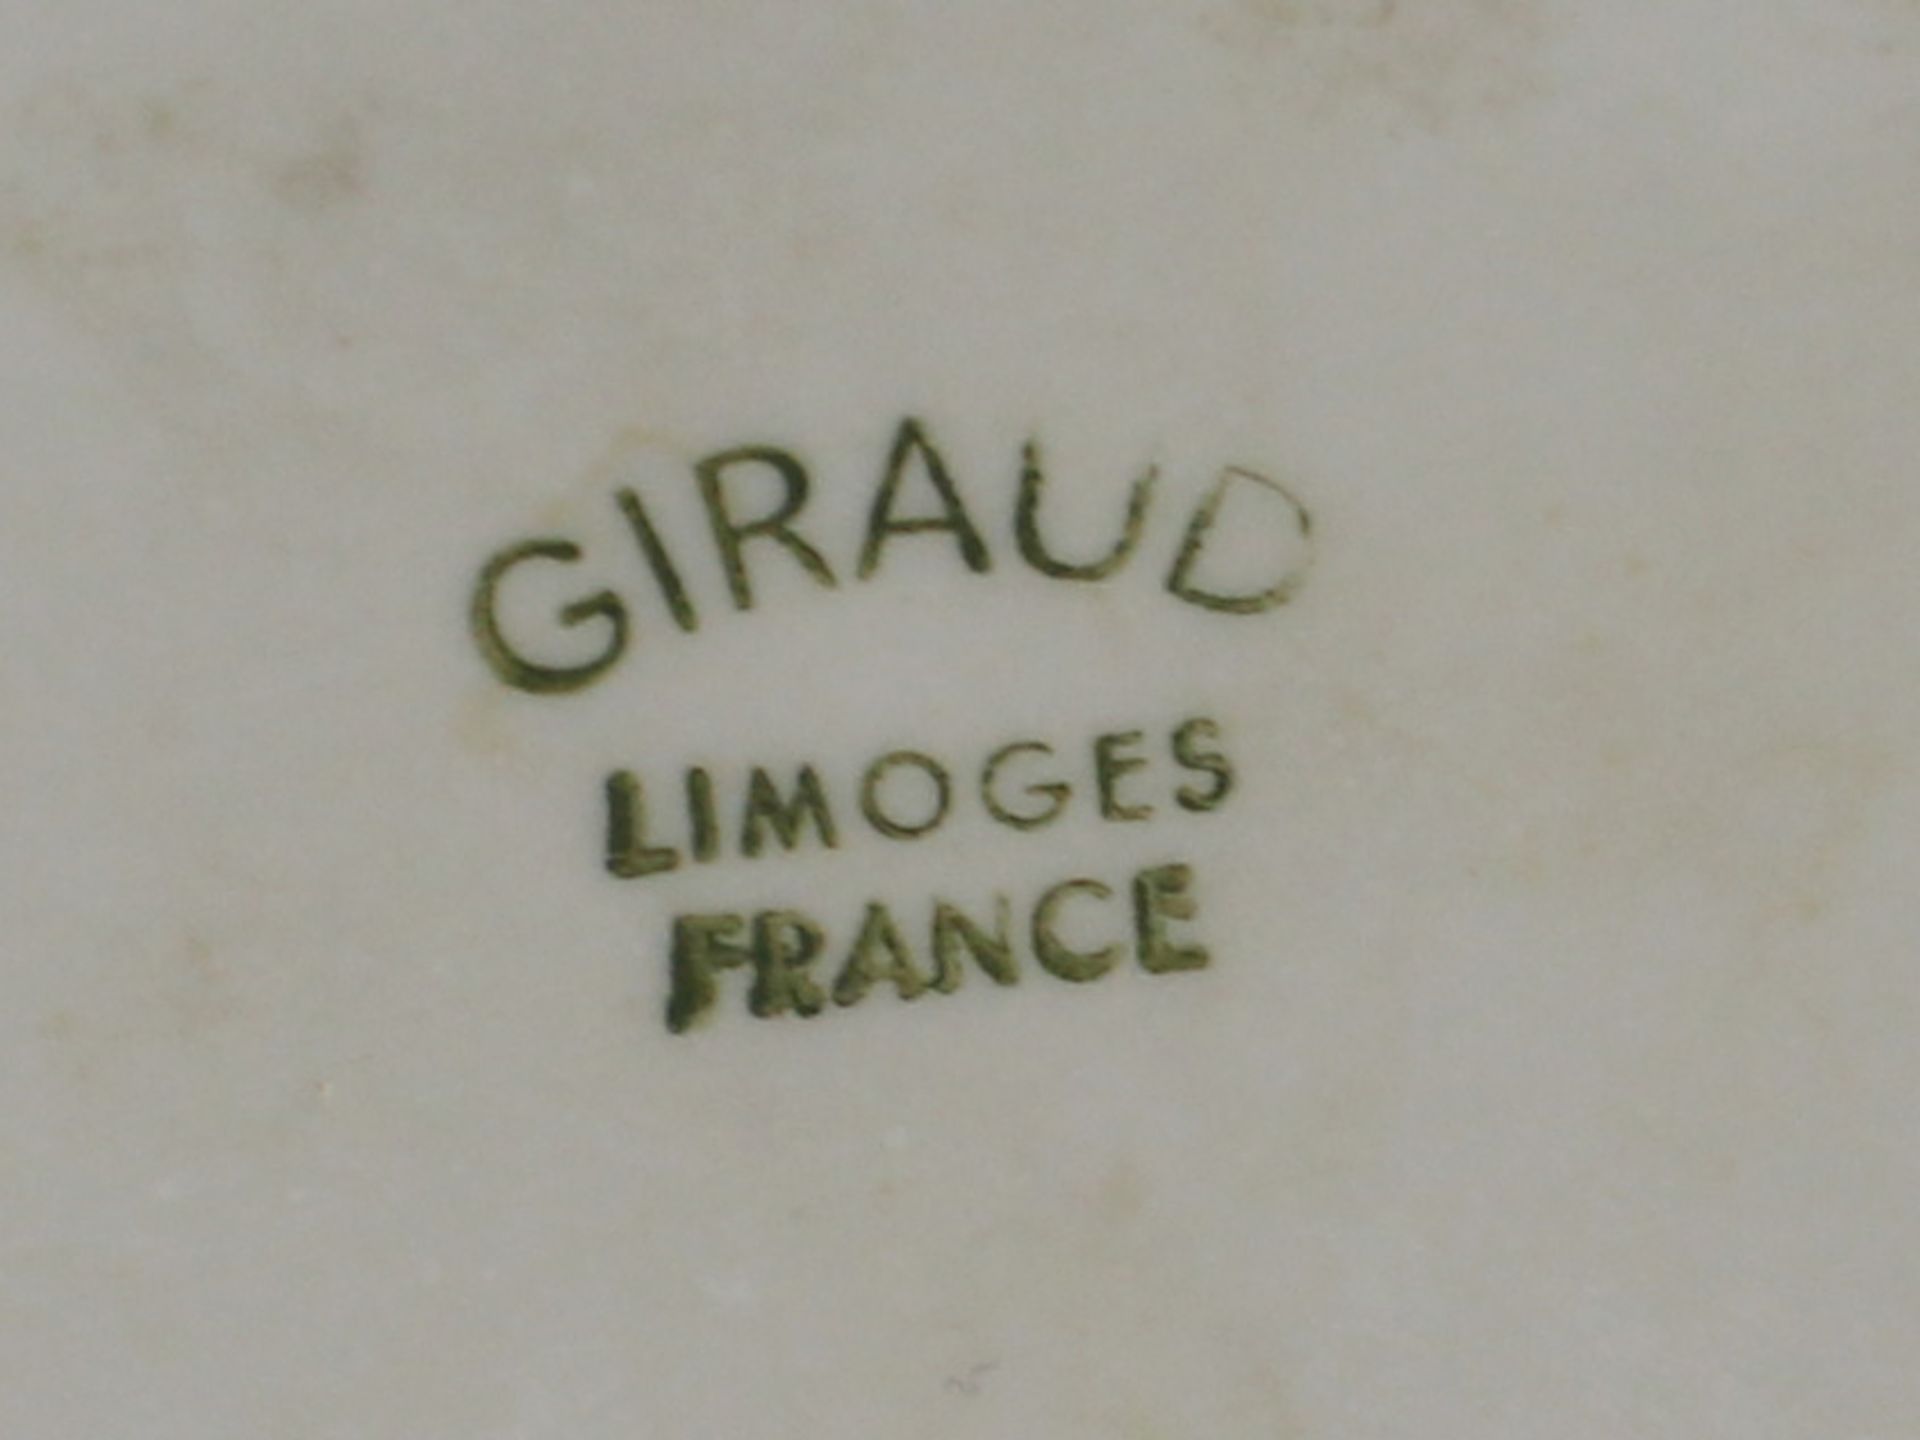 Giraud - Jardinieregrüne Stempelmarke, Limoges, Frankreich, Barockstil, auf 4 Volutenfüßen lastender - Bild 2 aus 2